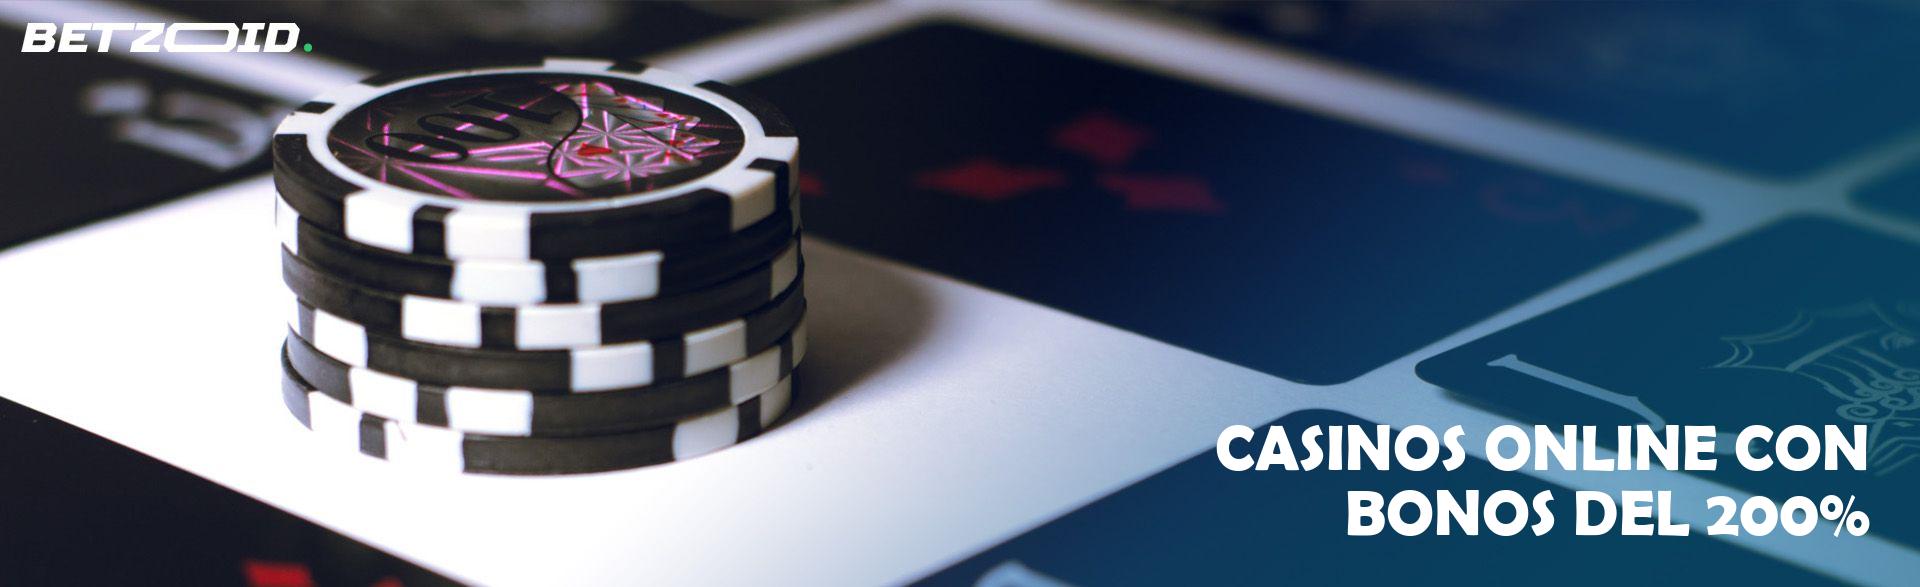 Casinos Online con Bonos Del 200%.